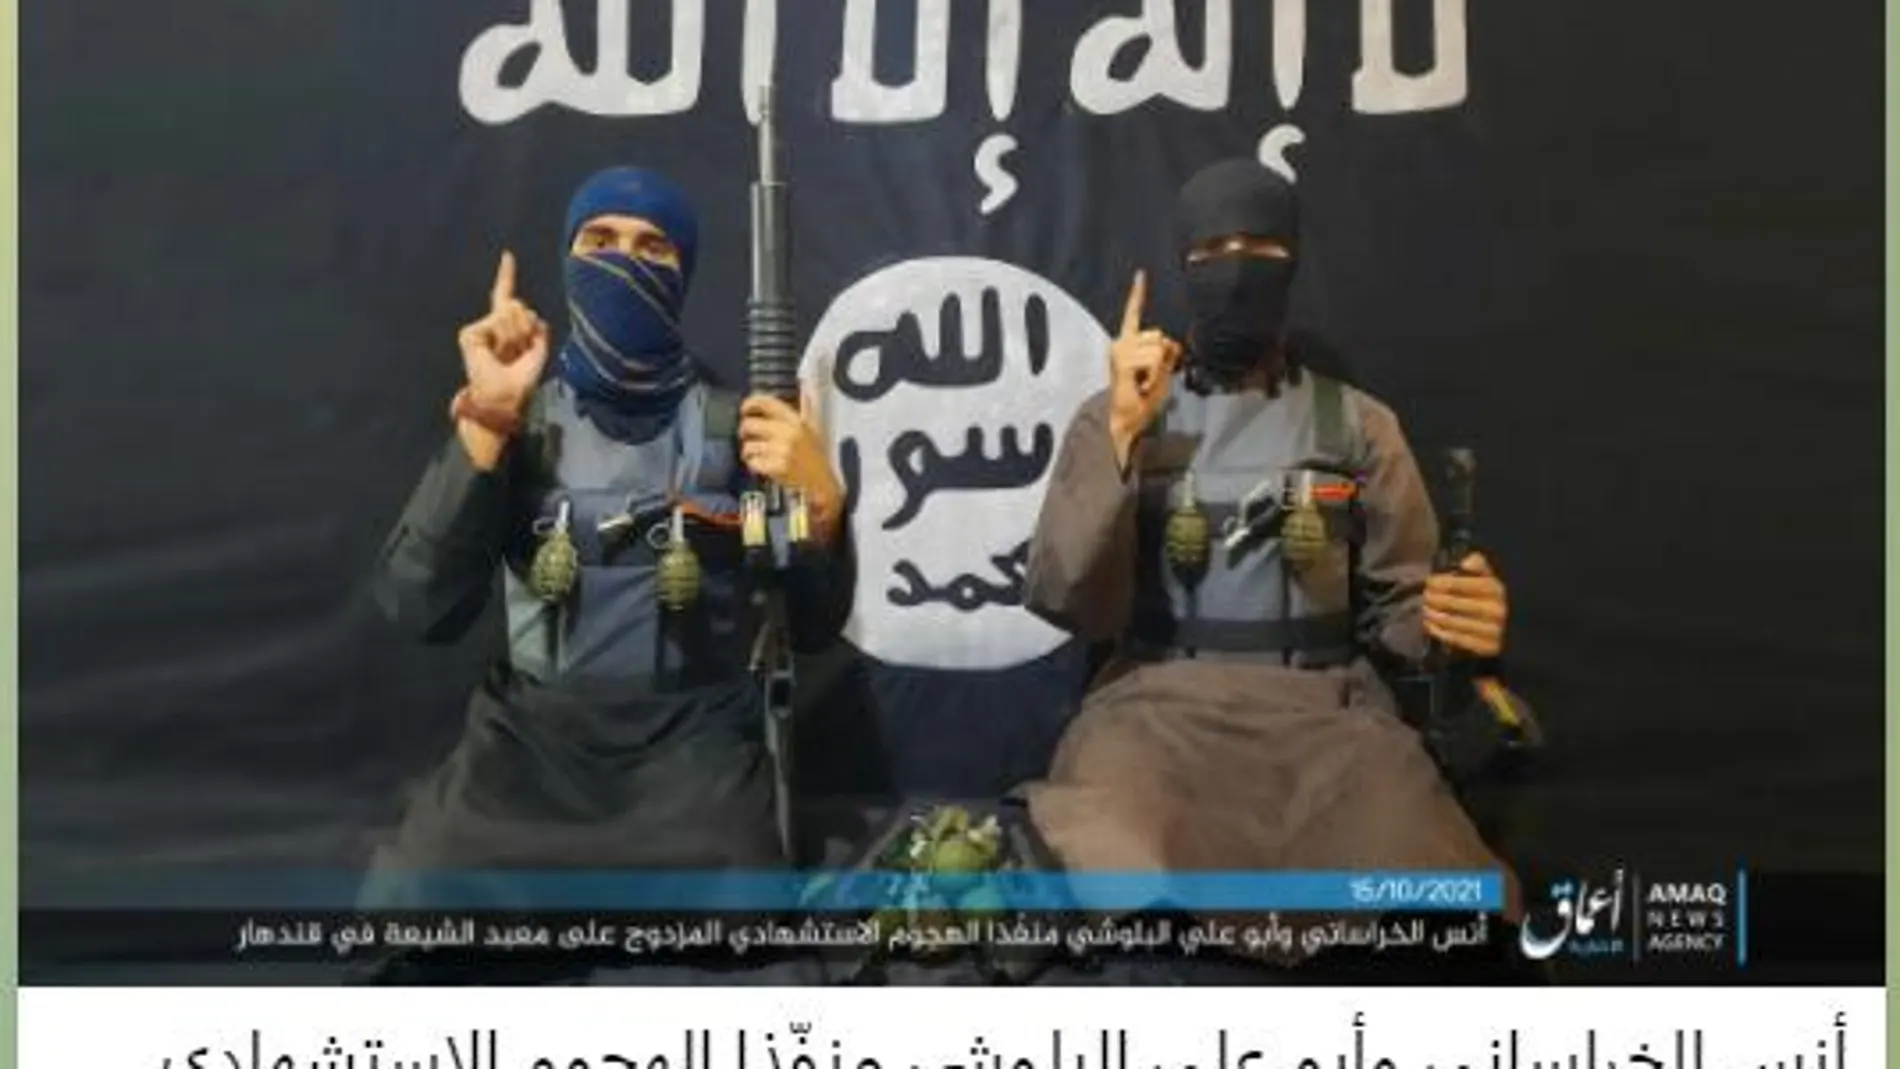 Anas al-Khorasani y Abu Ali al-Balushi, los autores del atentado en una fotogría difundida por el Estado Islámico